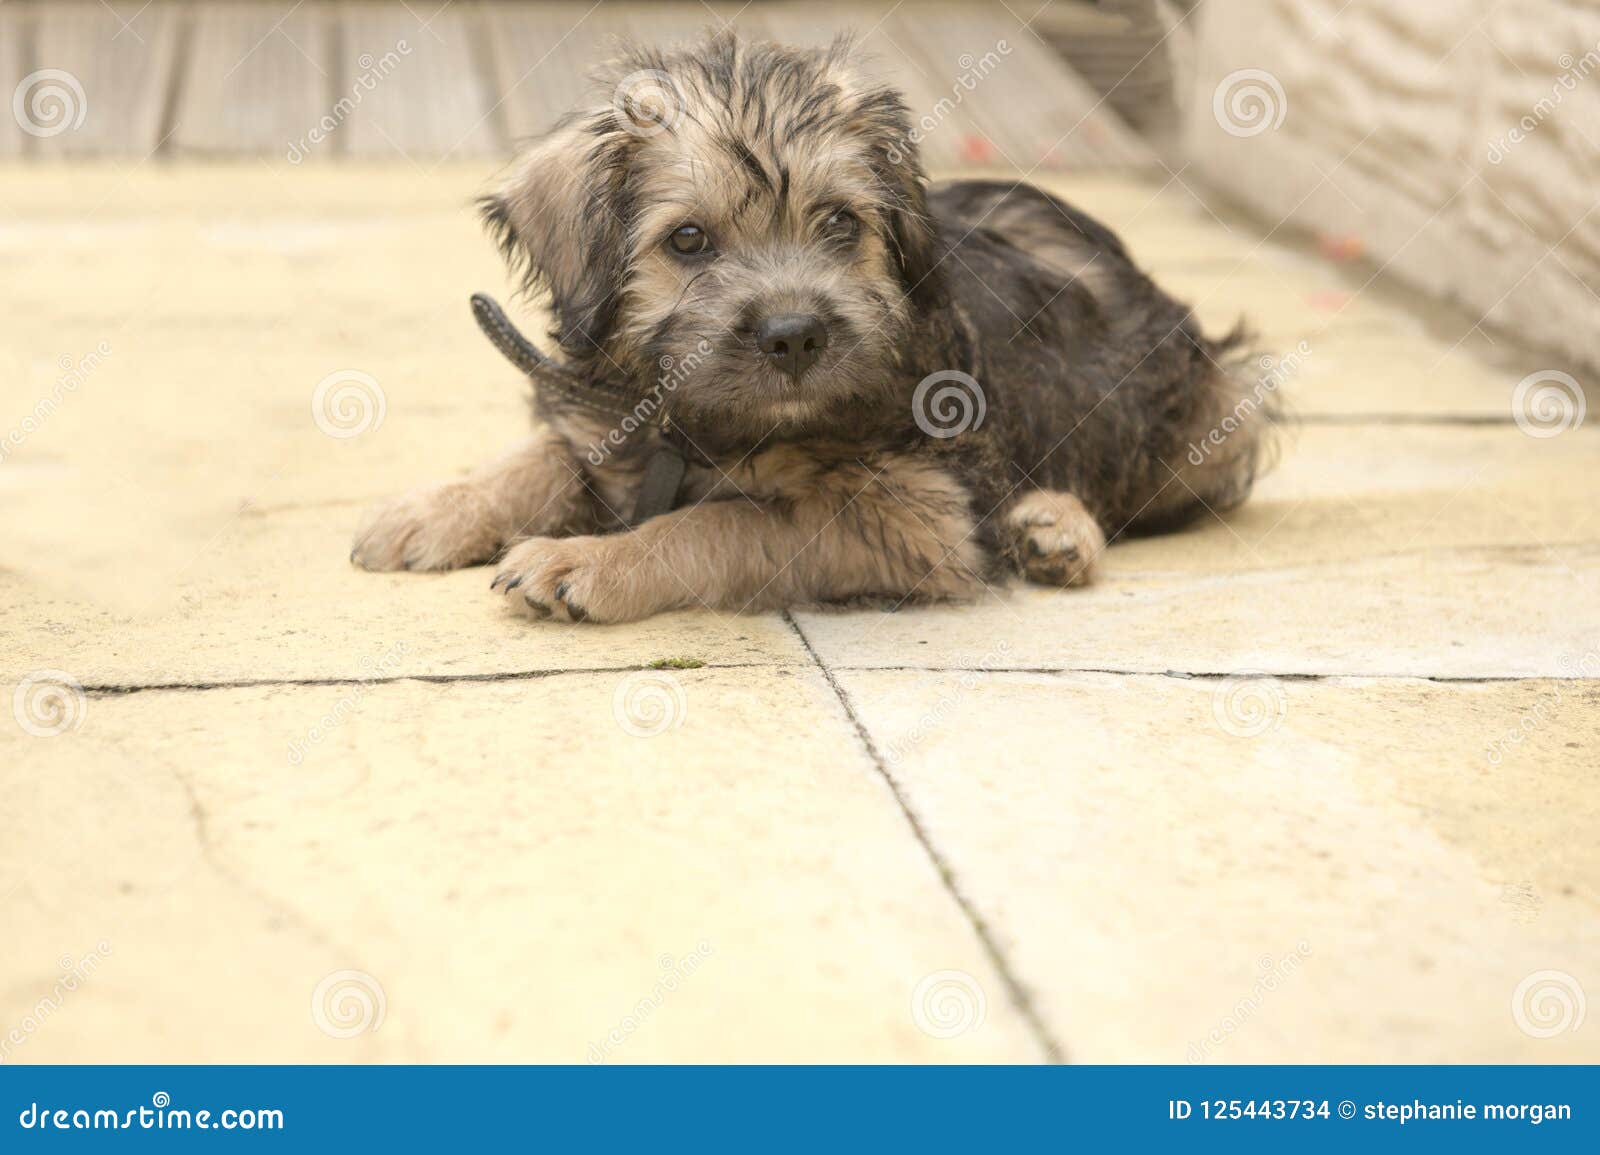 terrier cross puppies